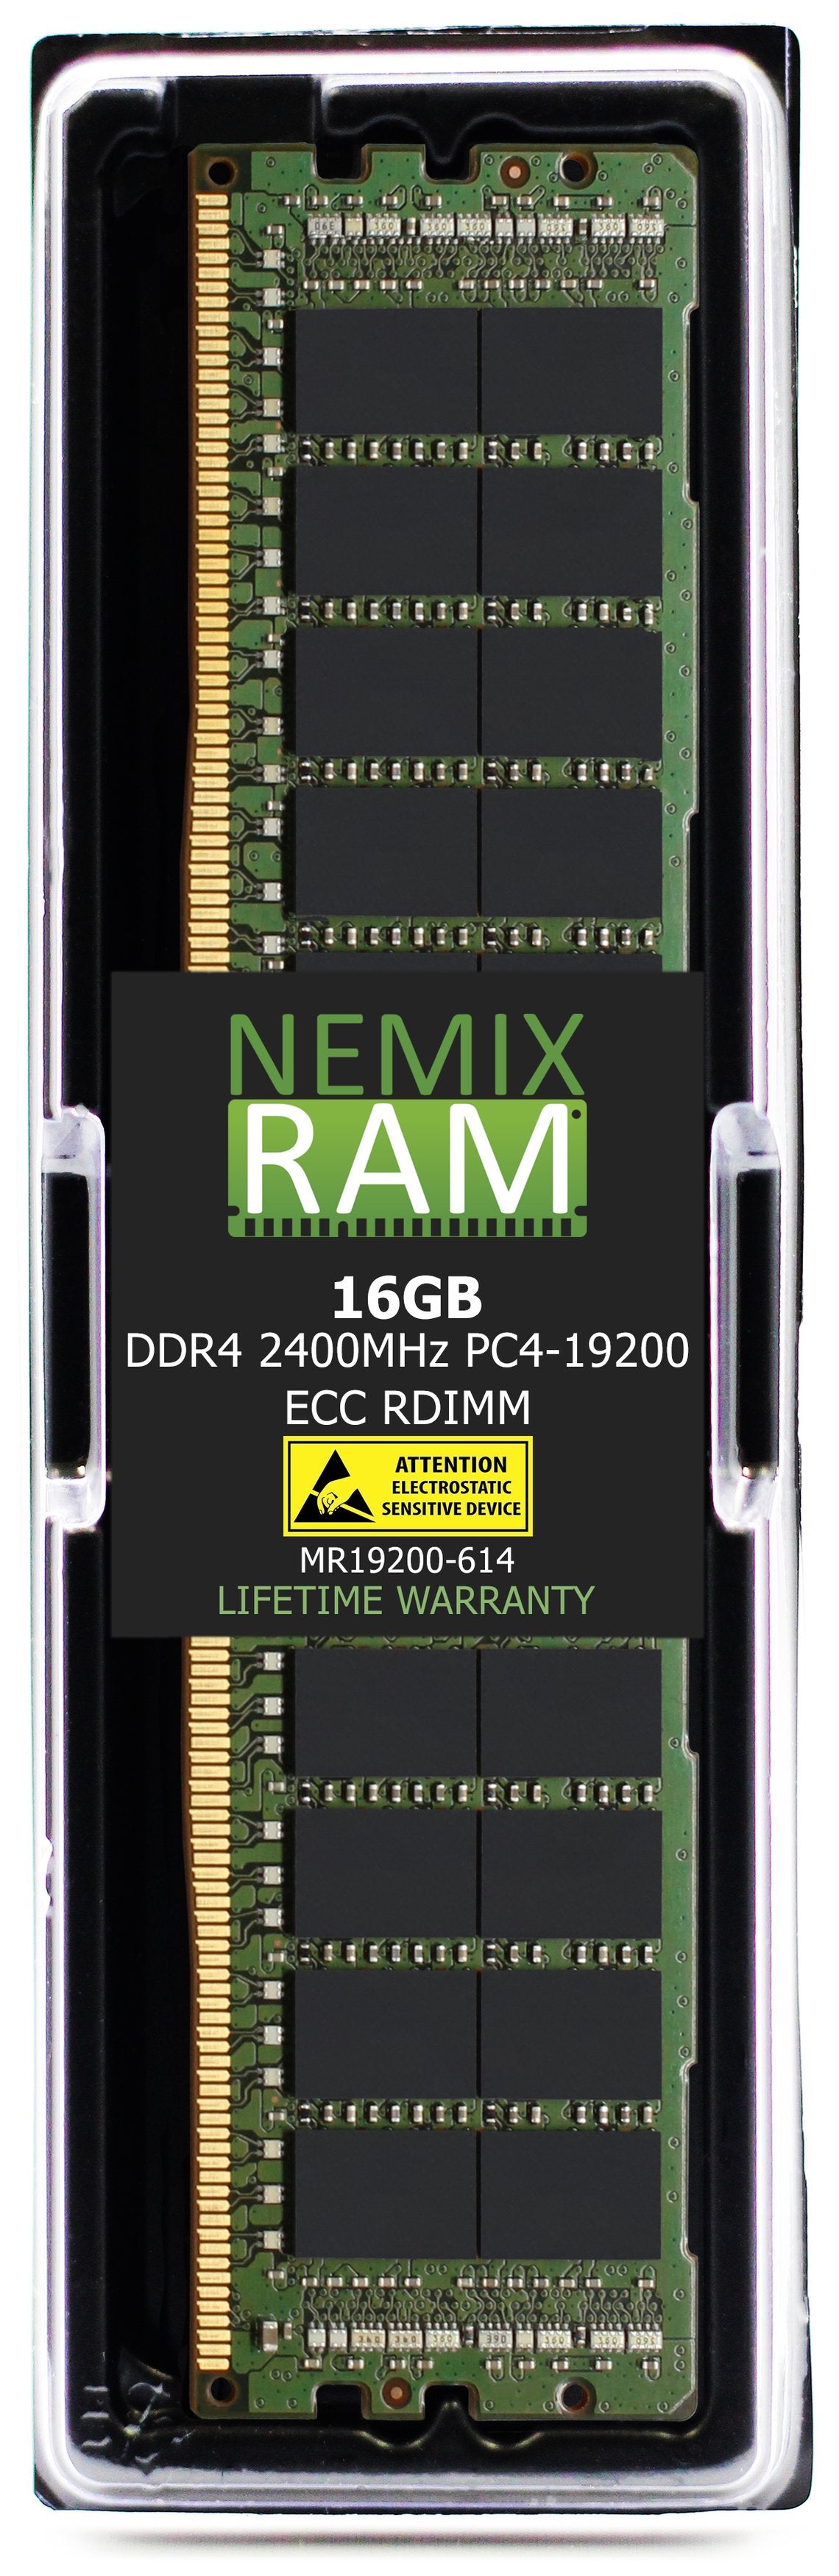 Hynix HMA82GR7CJR4N-UH 16GB DDR4 2400MHZ PC4-19200 RDIMM Compatible Memory Module